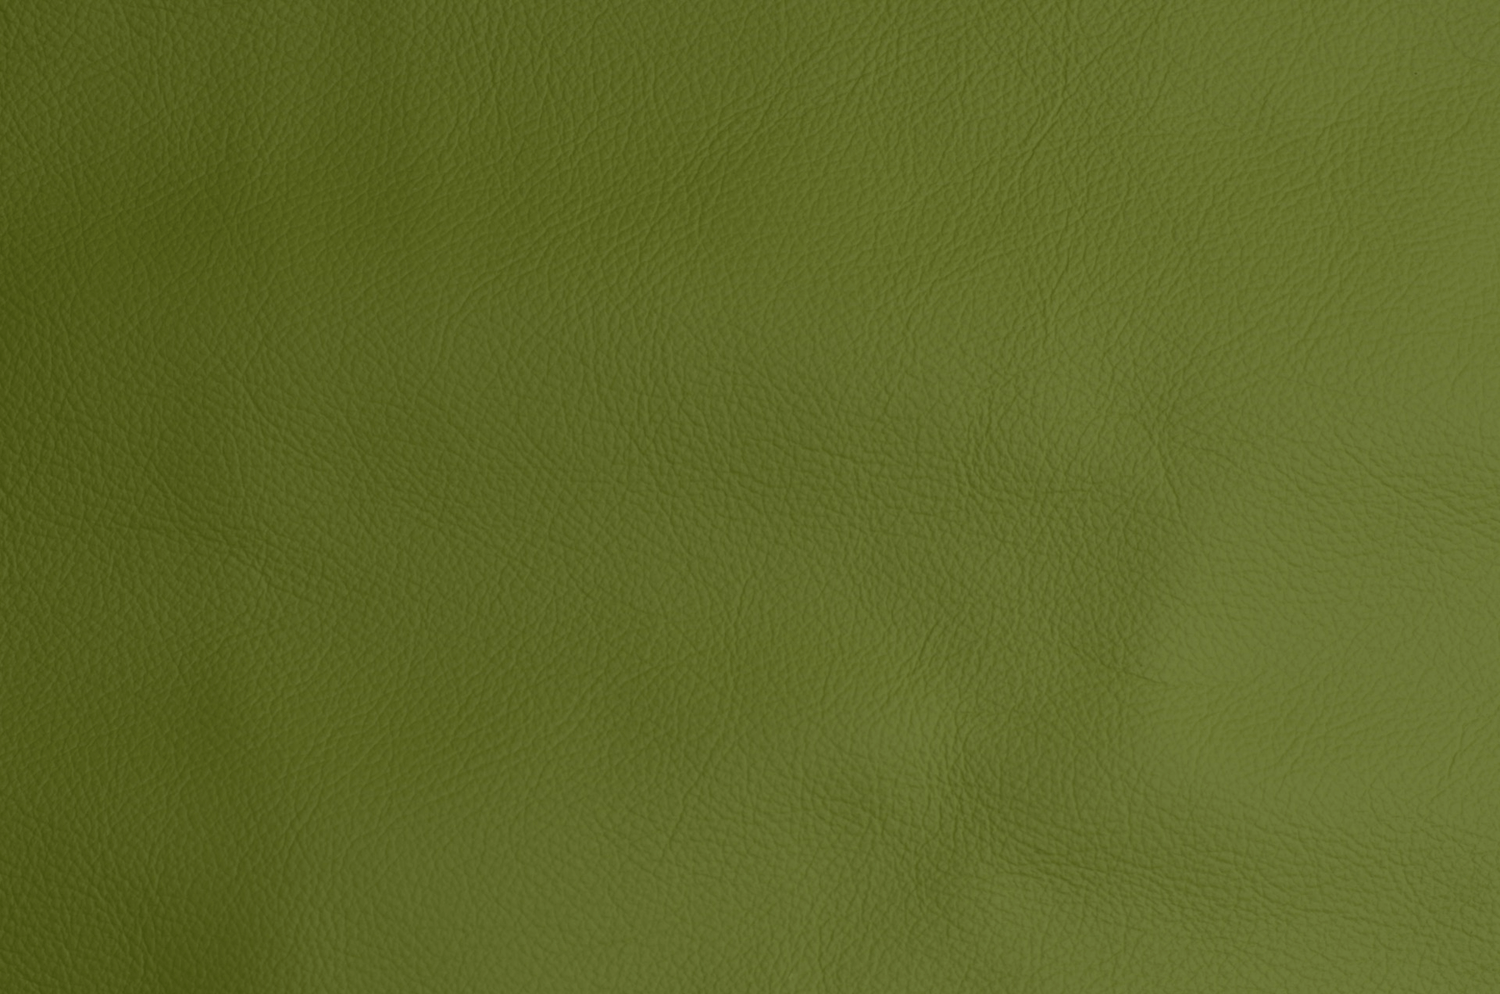 Beispielbild eines grünes Leders für den Bucheinband von naturalNote aus veganem Apfelleder